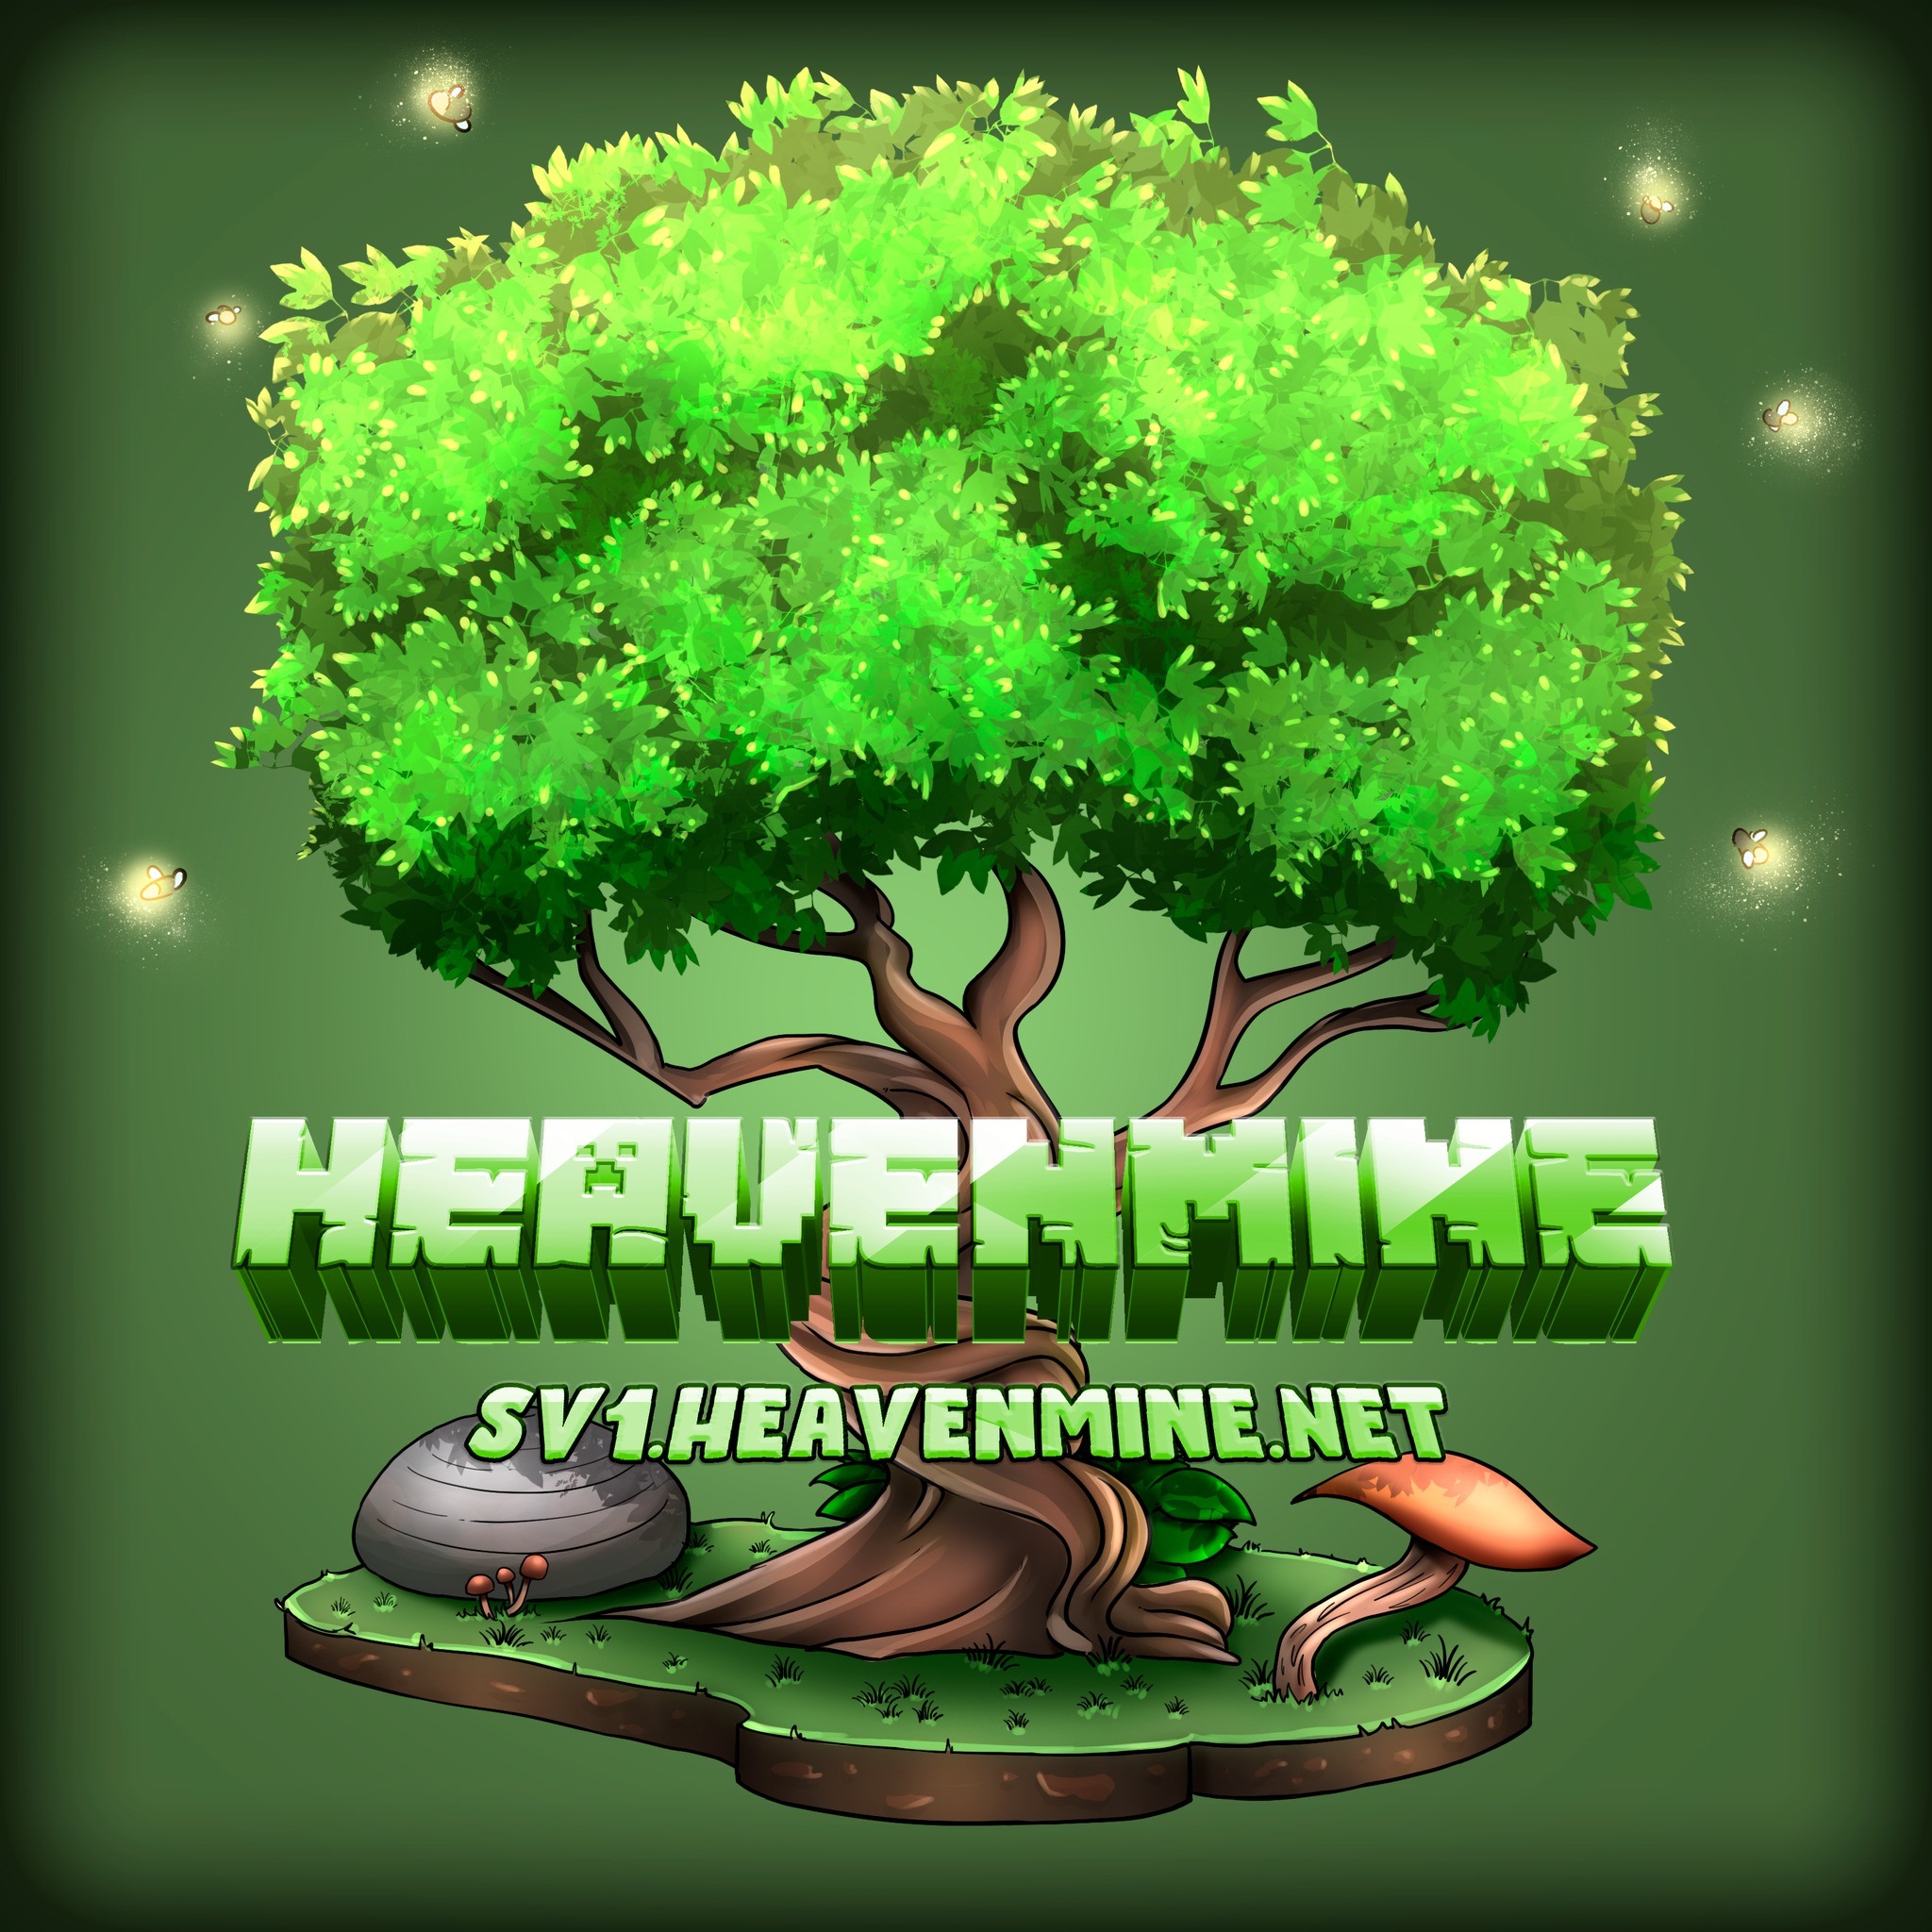 logo heaven.jpg